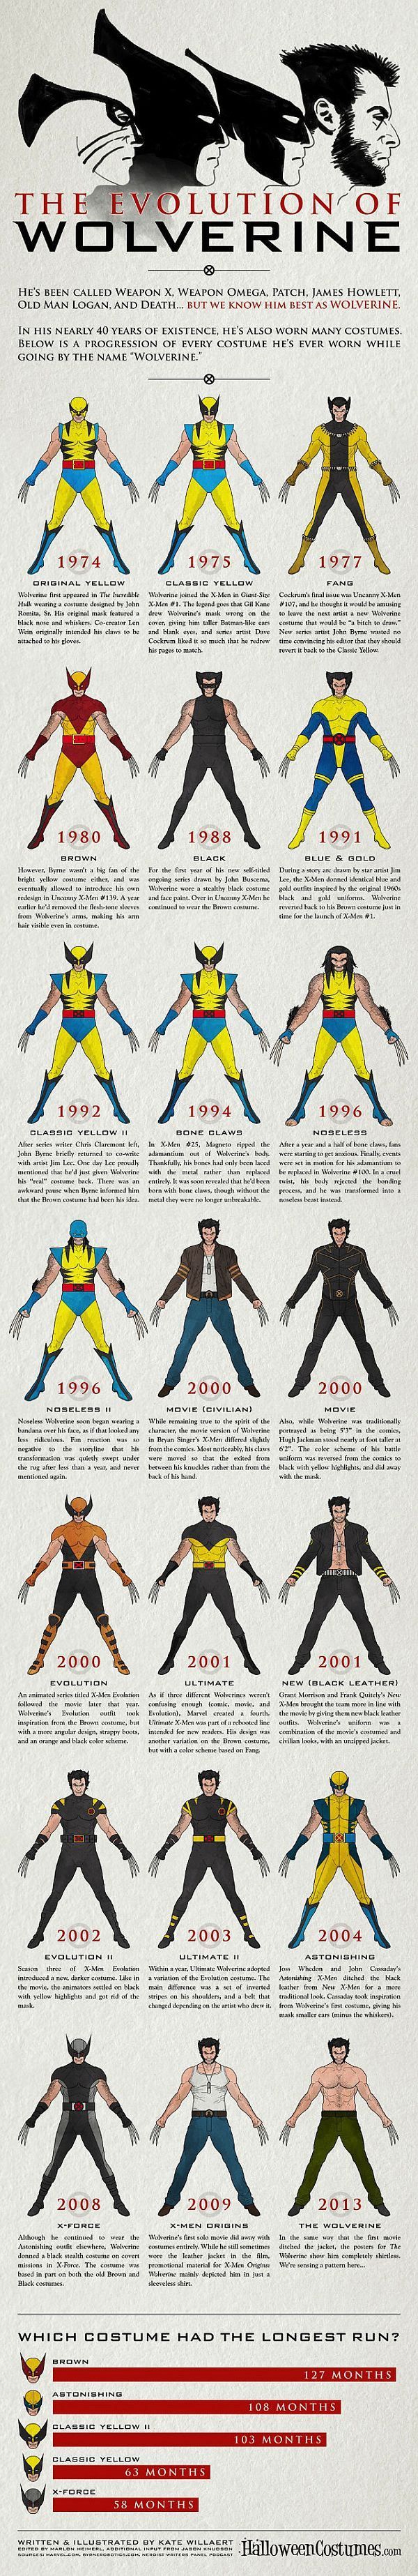 La evolución de Wolverine